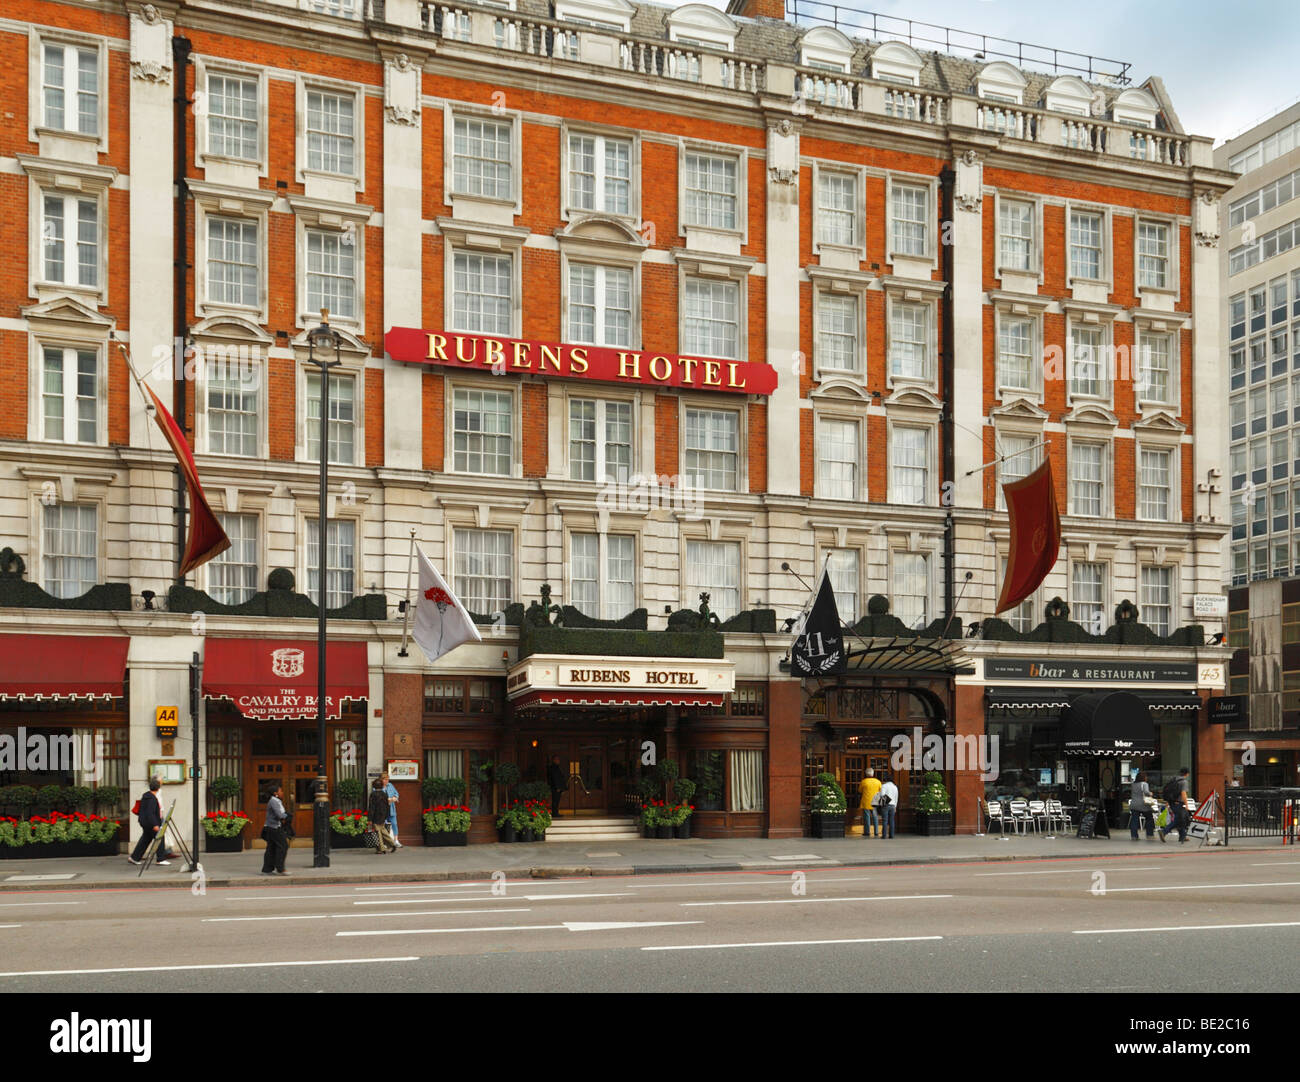 The Rubens Hotel. Buckingham Palace Road, London, England, UK. Stock Photo